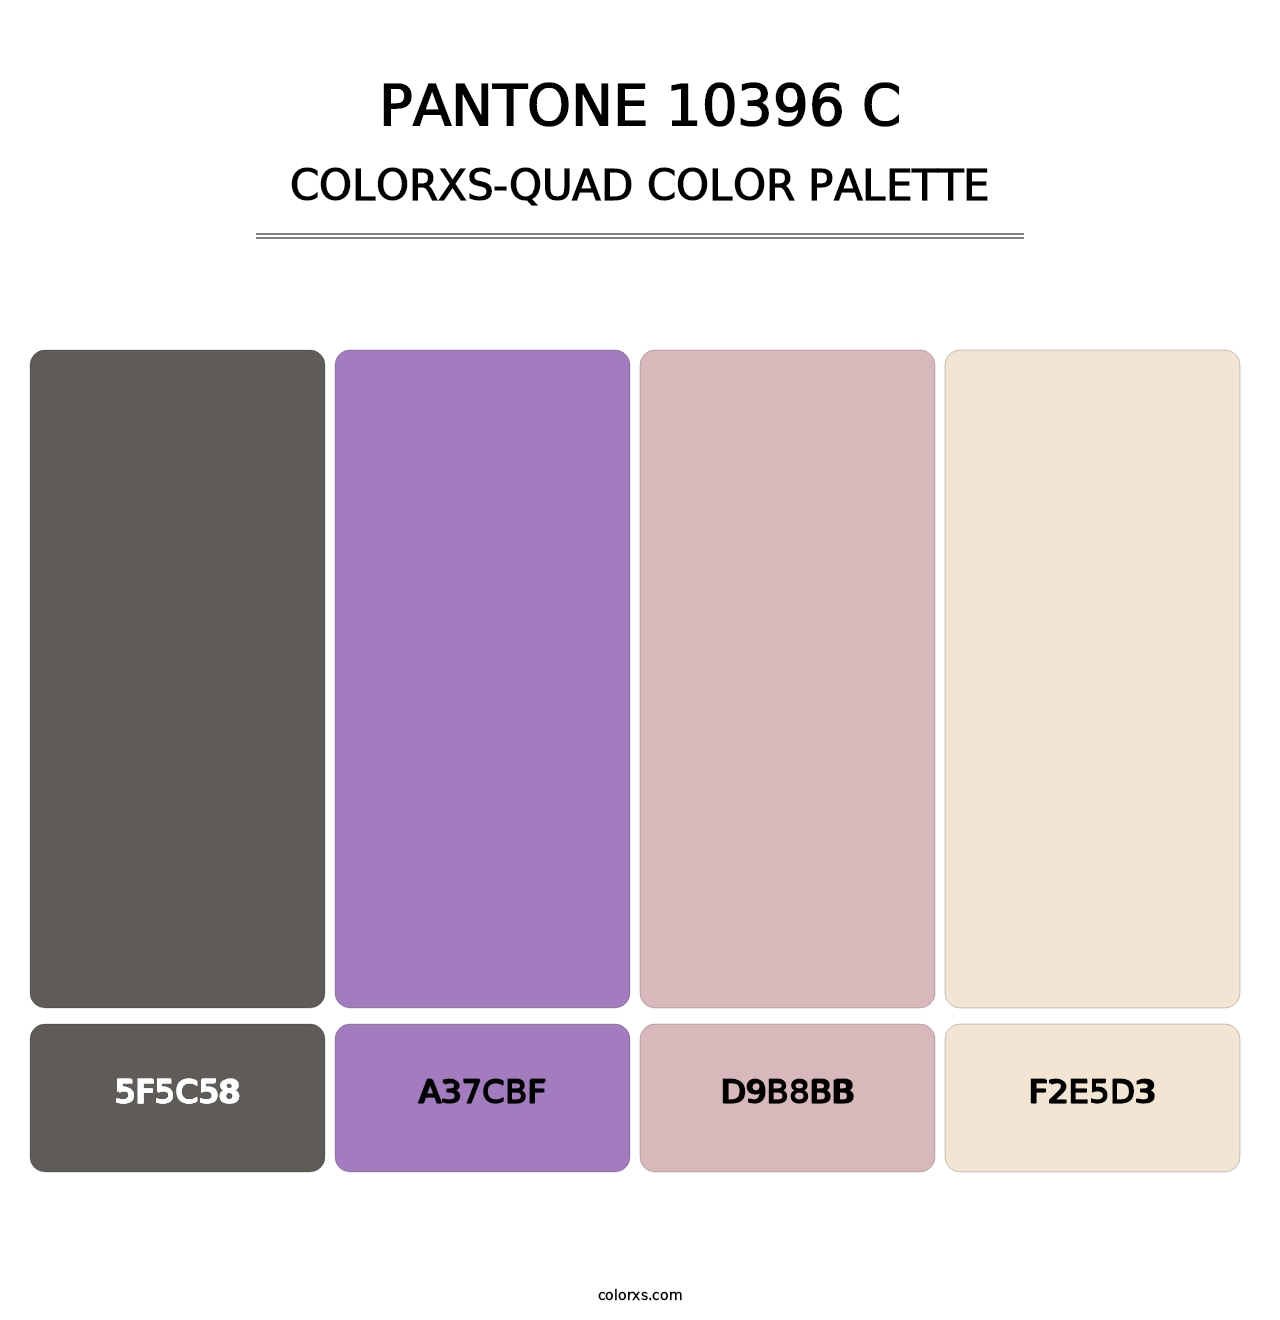 PANTONE 10396 C - Colorxs Quad Palette